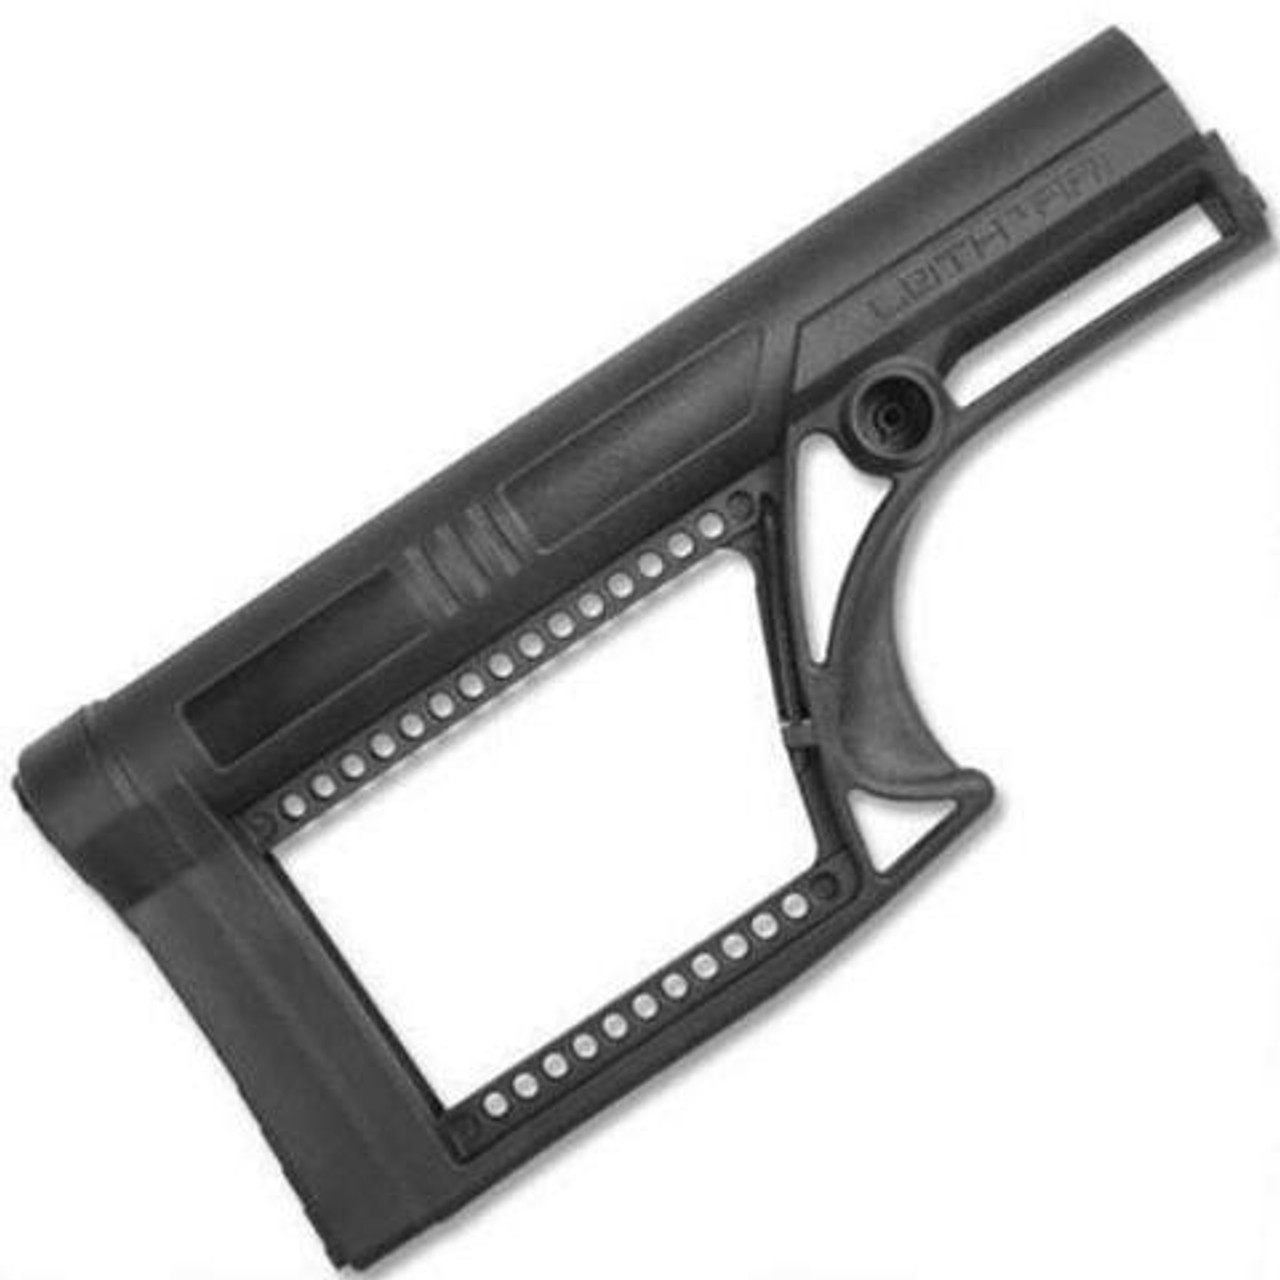 Luth-AR MBA-2 Skullaton Fixed Buttstock Black Fits AR-15/AR-10 